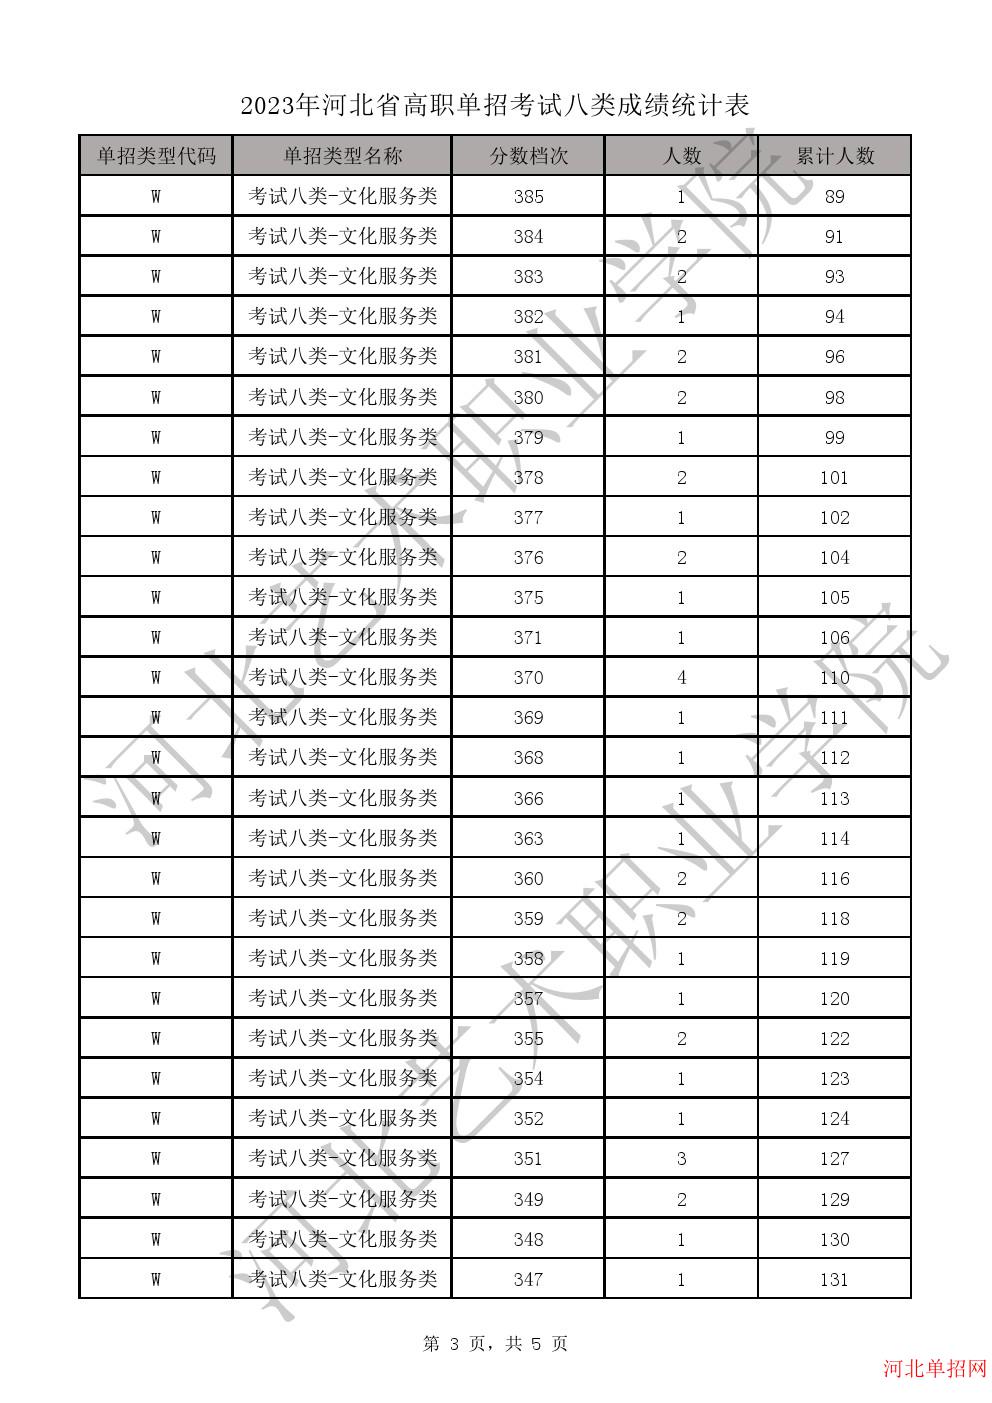 2023年河北省高职单招考试八类成绩统计表-W文化服务类一分一档表 图3